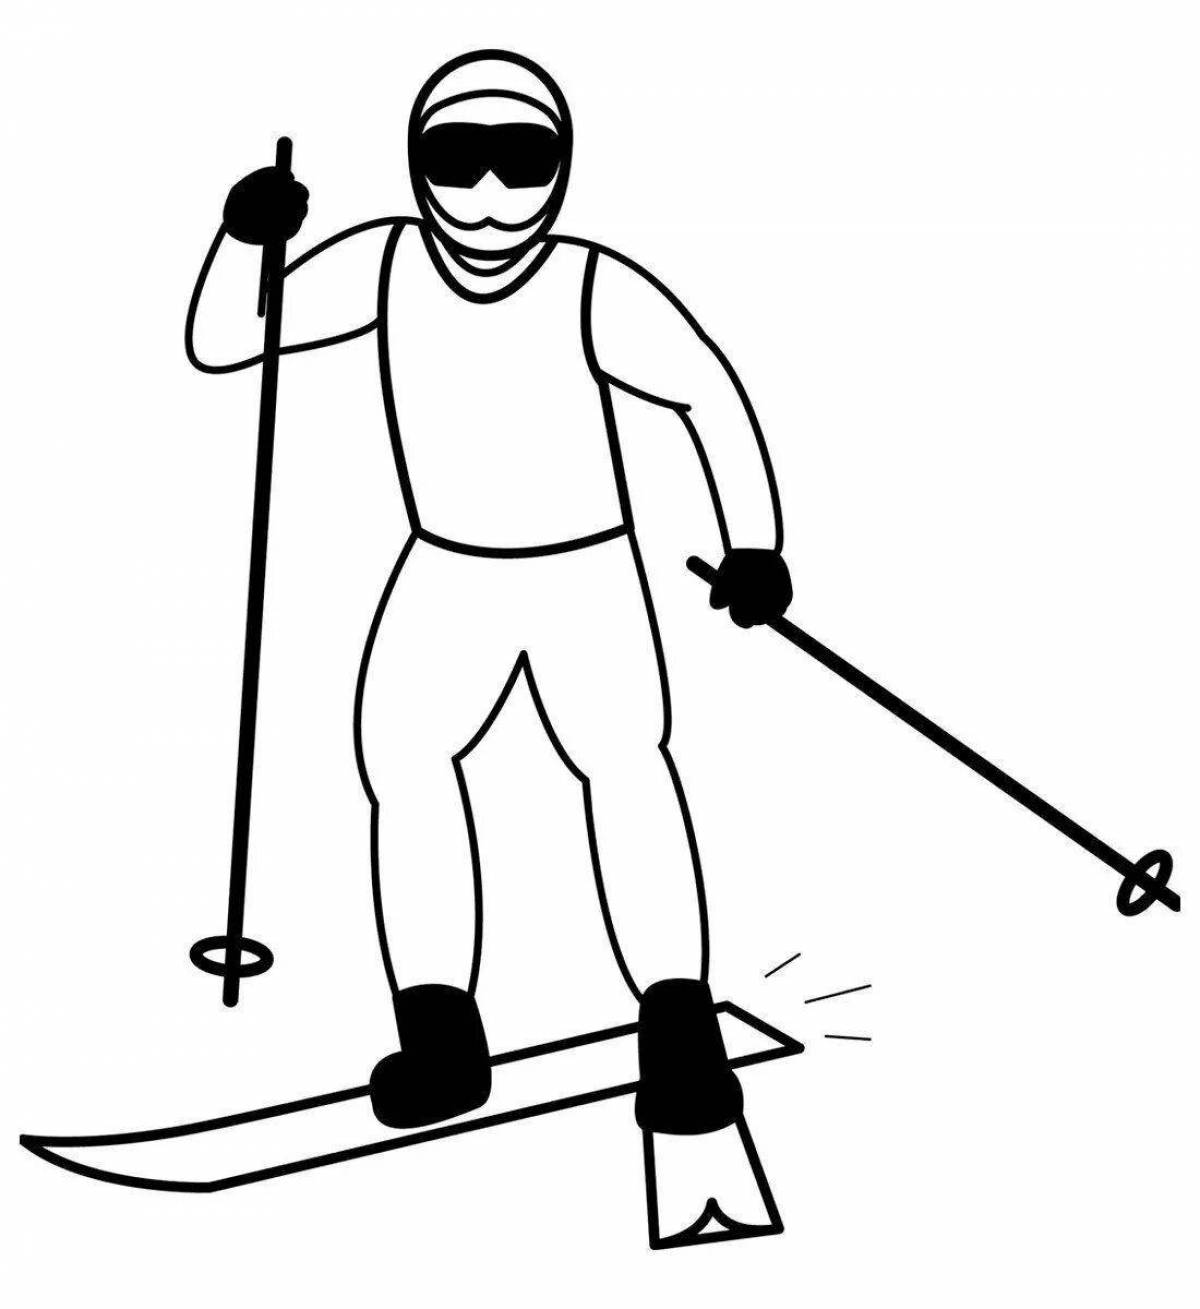 Heroic man on skis